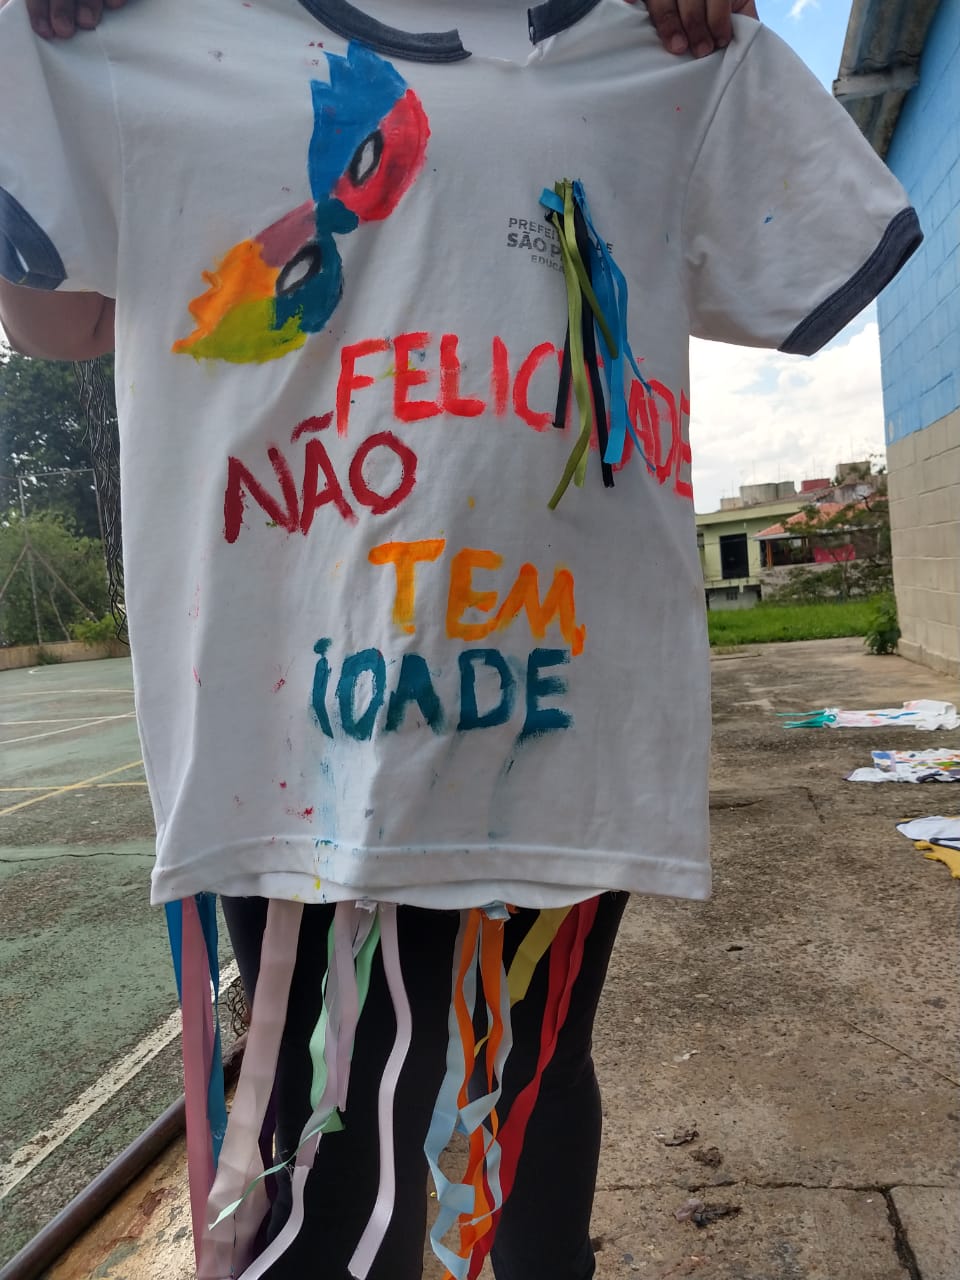 : A imagem mostra uma camiseta branca personalizada para o carnaval. No centro está escrita a frase “Felicidade não tem idade”.